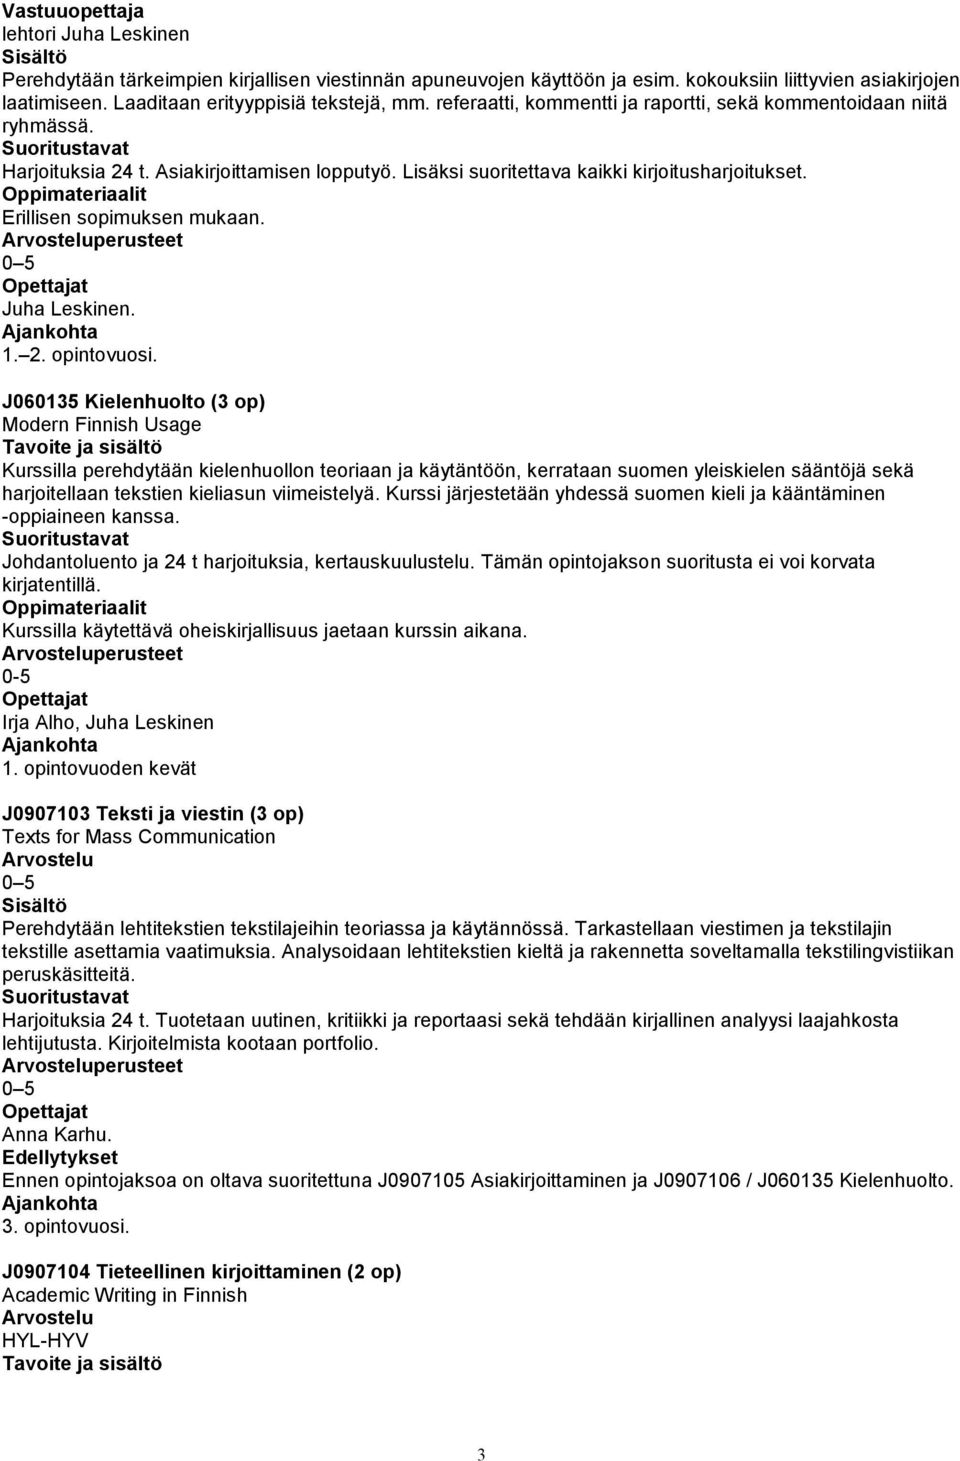 J060135 Kielenhuolto (3 op) Modern Finnish Usage Kurssilla perehdytään kielenhuollon teoriaan ja käytäntöön, kerrataan suomen yleiskielen sääntöjä sekä harjoitellaan tekstien kieliasun viimeistelyä.